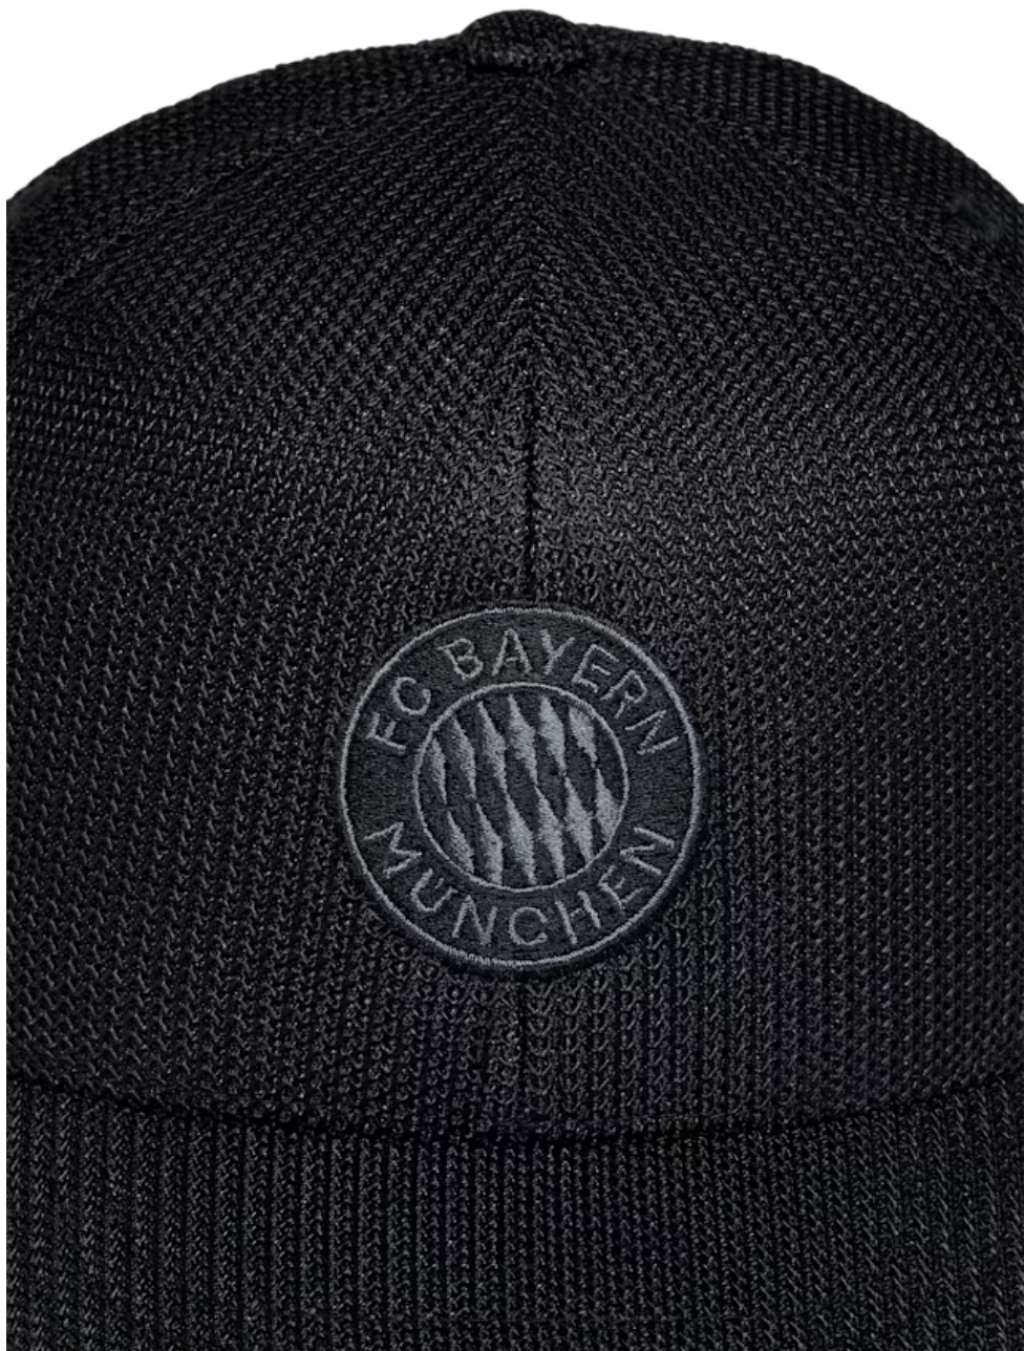 Kšiltovka Flex Mesh FC Bayern München, černá